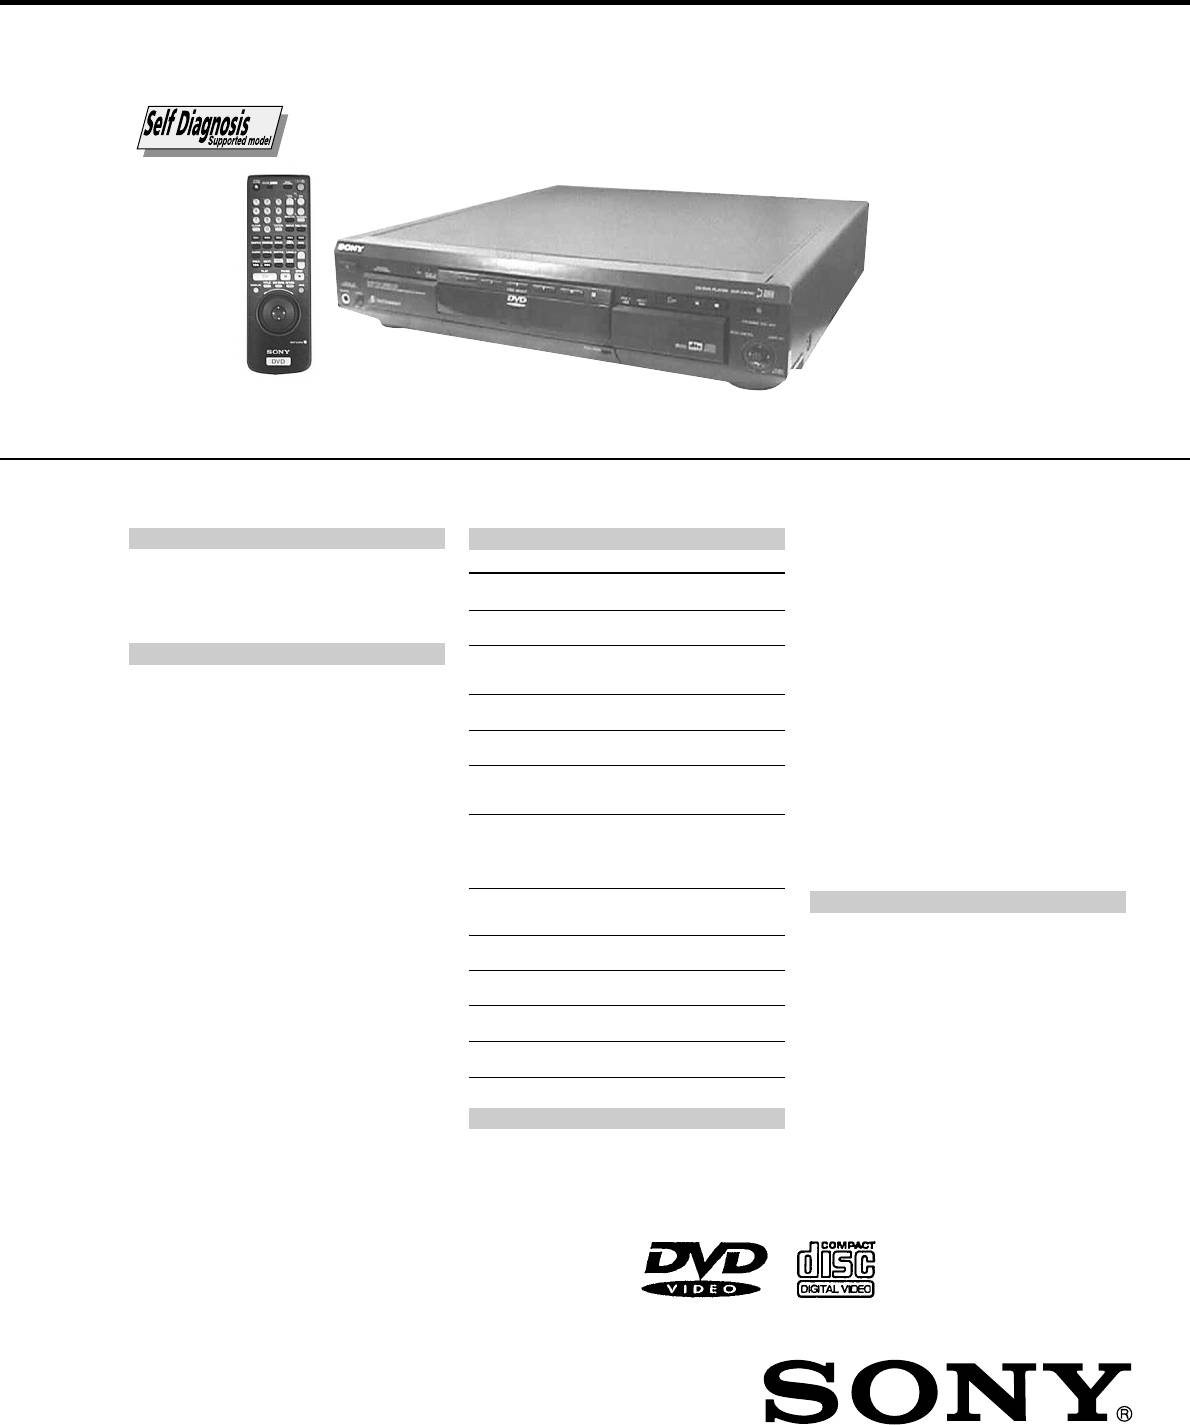 Sony DVP-C675D